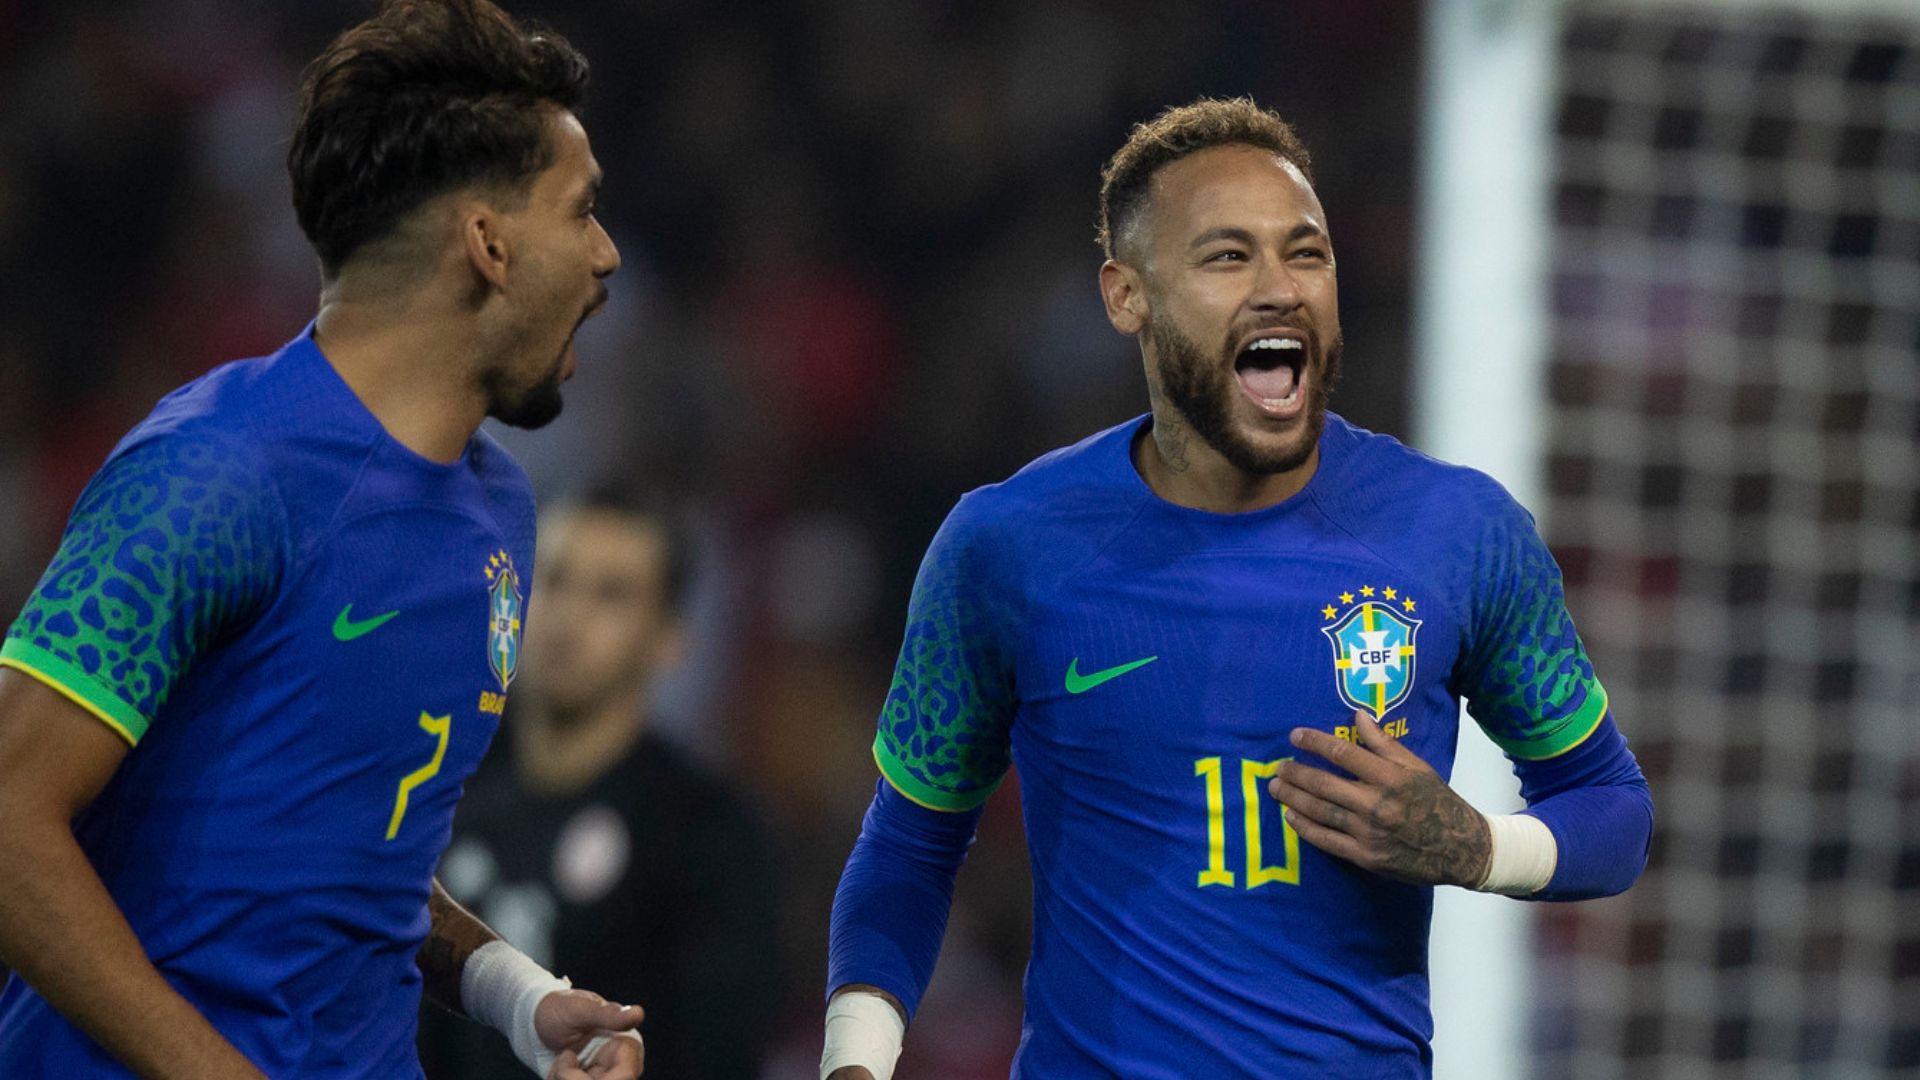 Neymar fora do top 15 do futebol francês; veja ranking com os 30